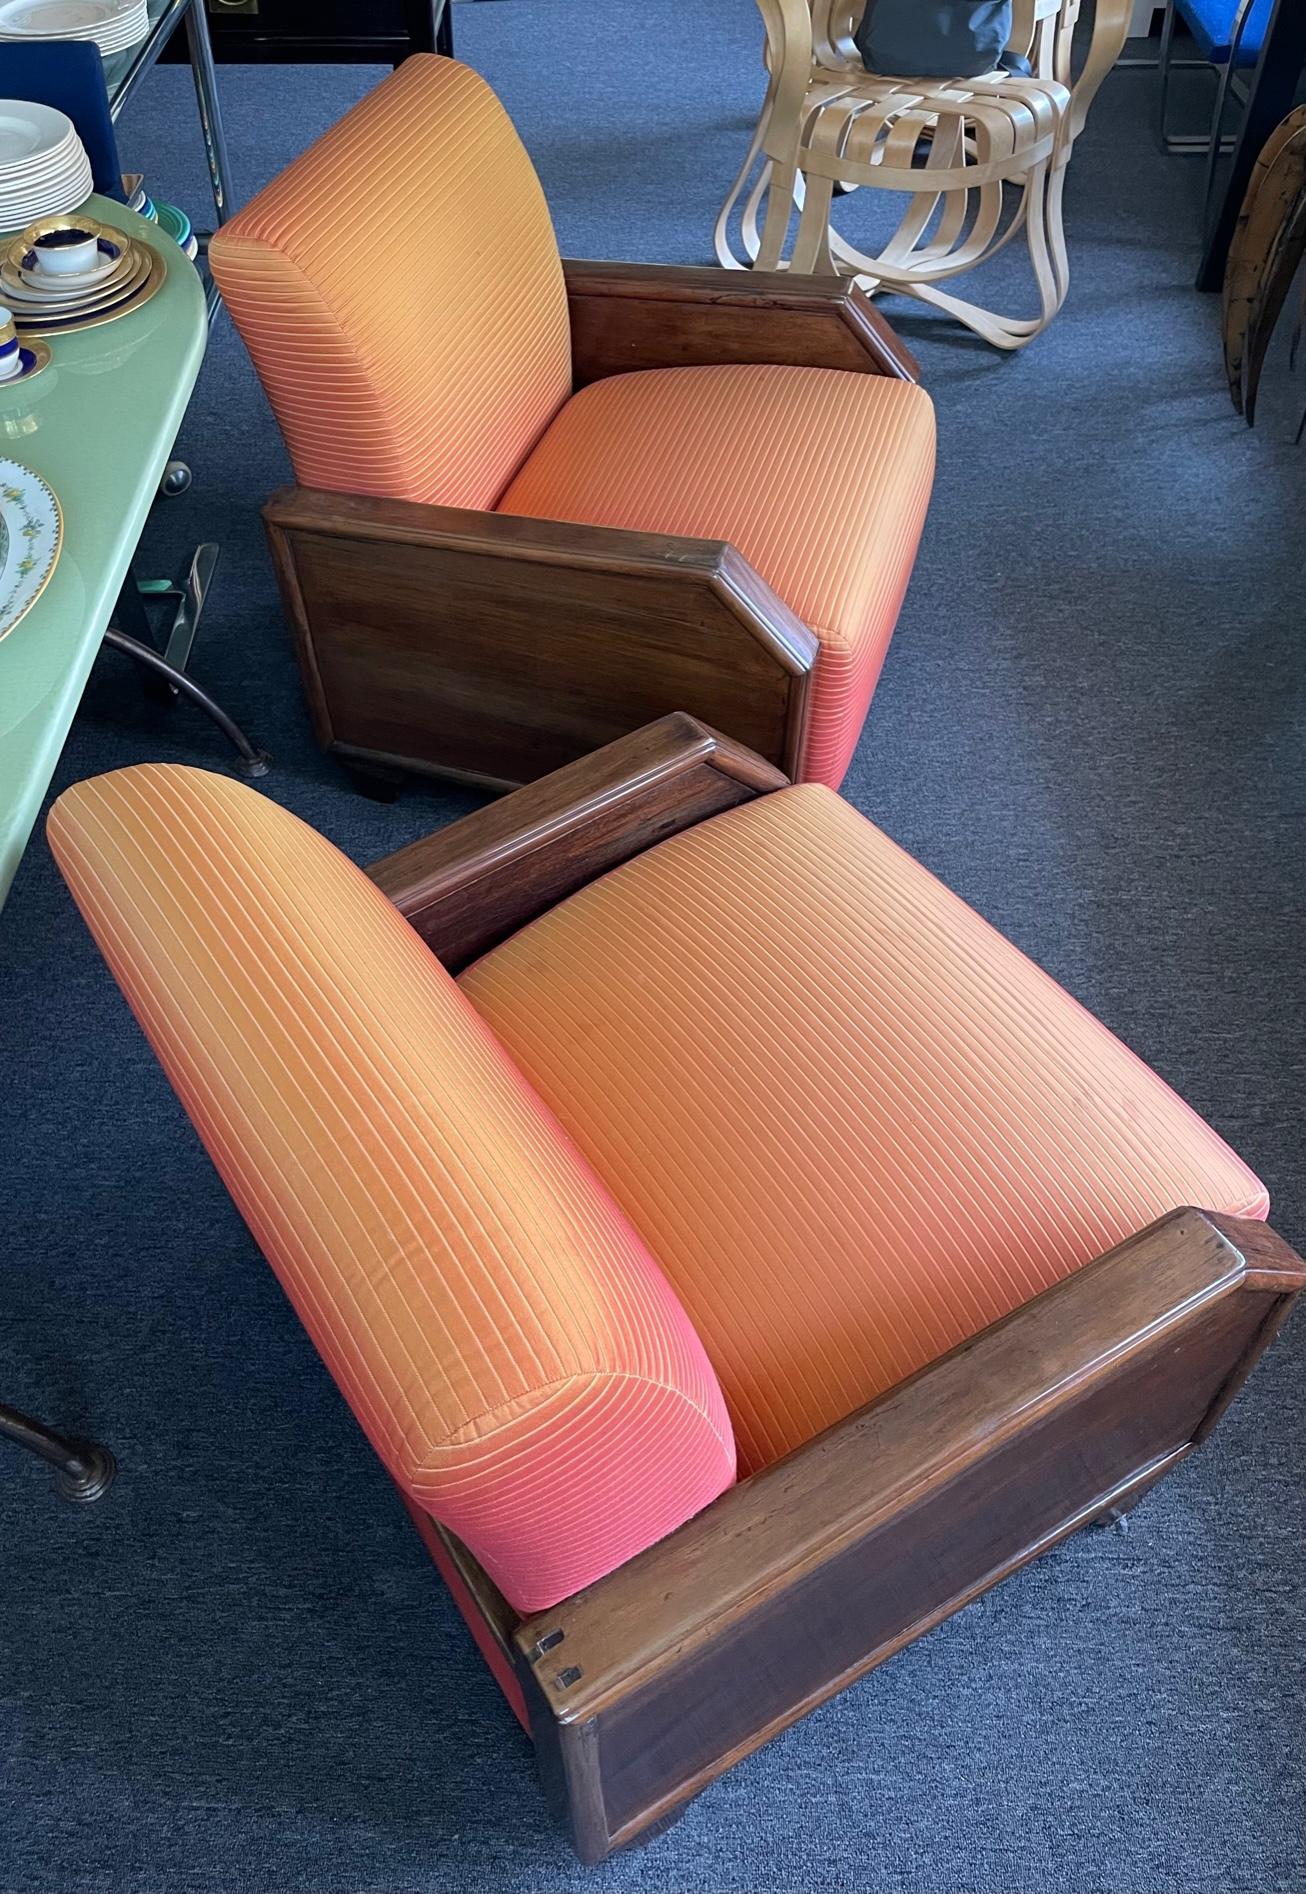 Paire de grands fauteuils club Art Déco français rembourrés. Avec leur look angulaire et leur tissu rembourré d'inspiration Art déco, ces fauteuils inspirés du style d'Emile-Jacques Ruhlmann sont magnifiques des années 1930 et très confortables avec